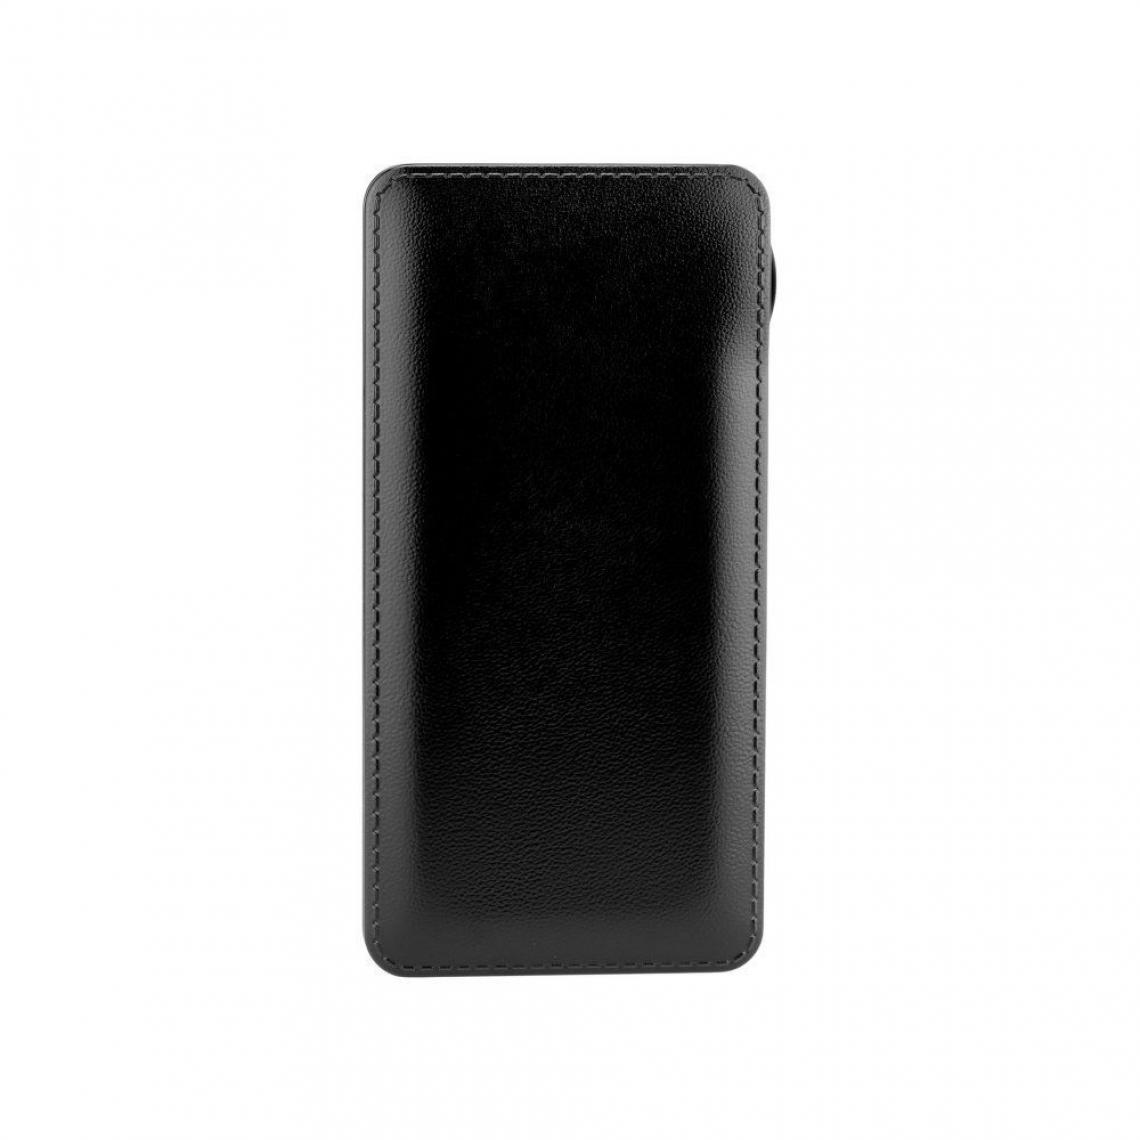 Ozzzo - Chargeur batterie externe 10000mAh powerbank ozzzo noir pour Teclast X4 - Autres accessoires smartphone